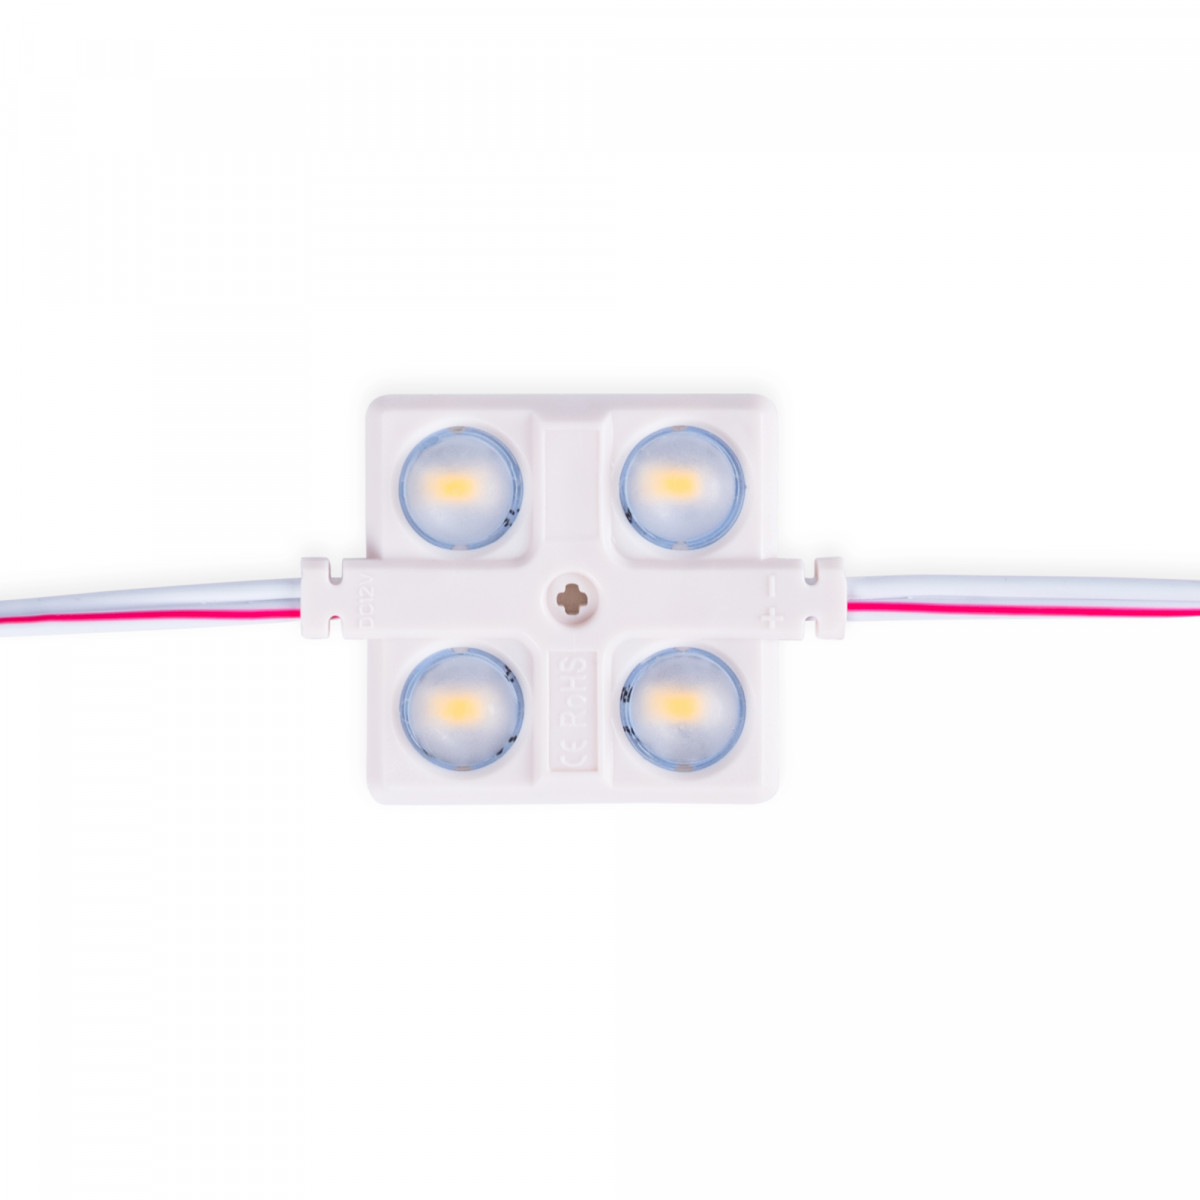 LED Modulkette für den Werbeeinsatz - 2W - 12V - IP65 - 160° - 3000K - LED Modul, Werbung, Leuchtkasten, Beschilderung